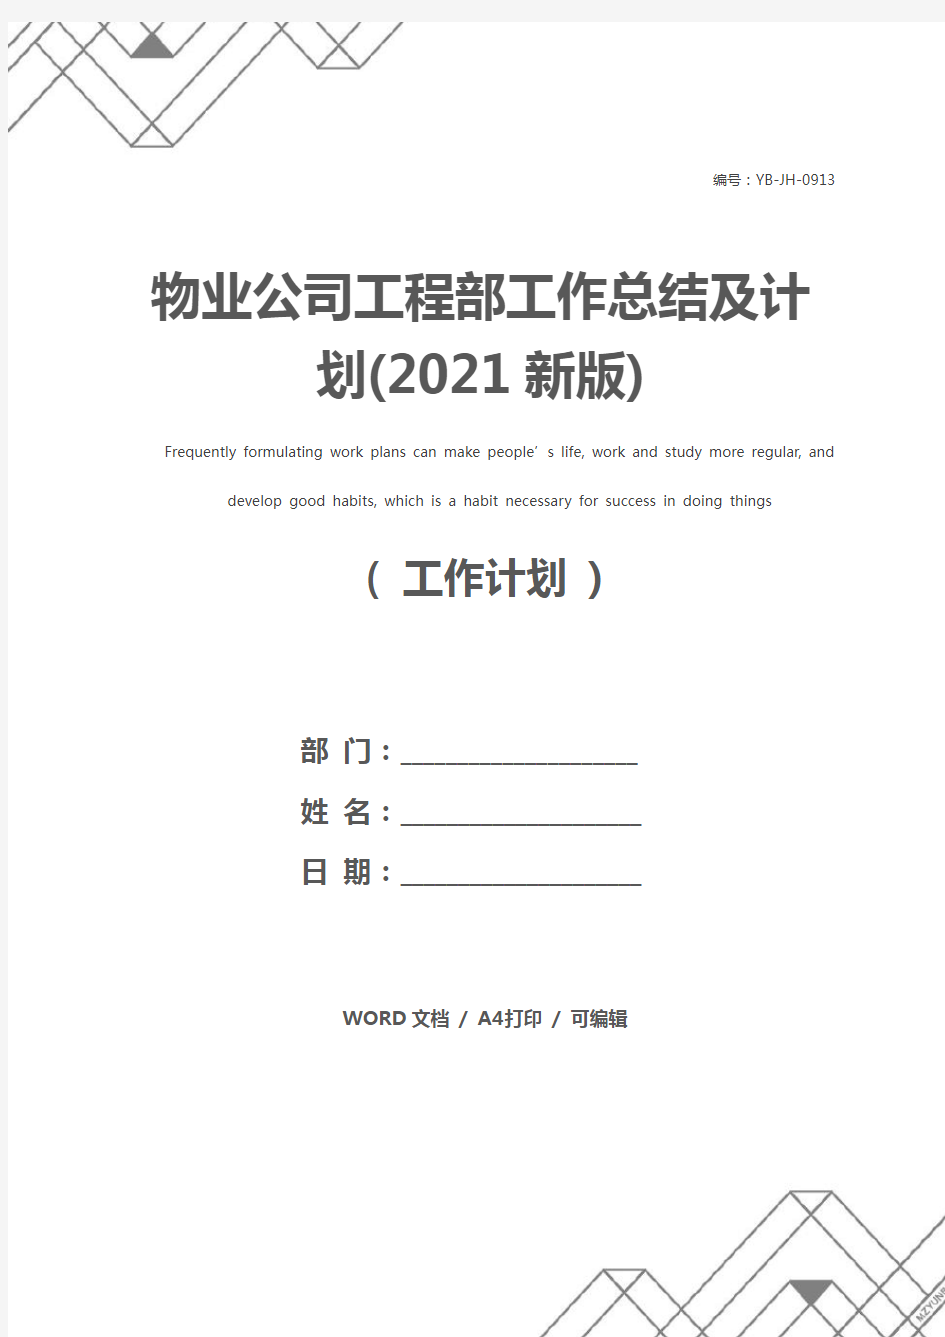 物业公司工程部工作总结及计划(2021新版)